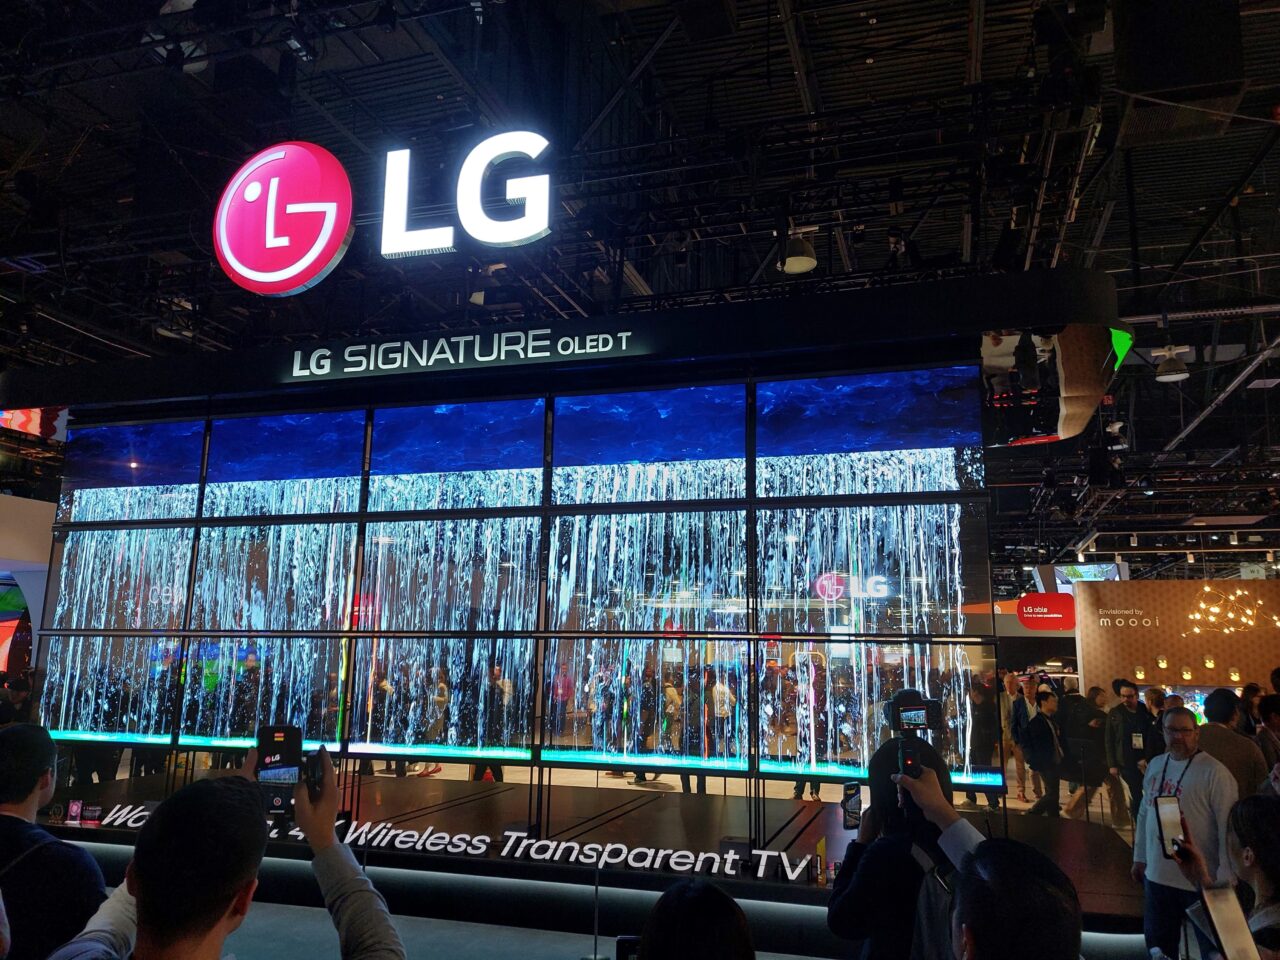 Ekspozycja telewizorów LG Signature OLED T na targach CES 2024, z dużym logo LG i wizualizacją wodospadu na ekranach, w tle widoczni odwiedzający robiący zdjęcia.